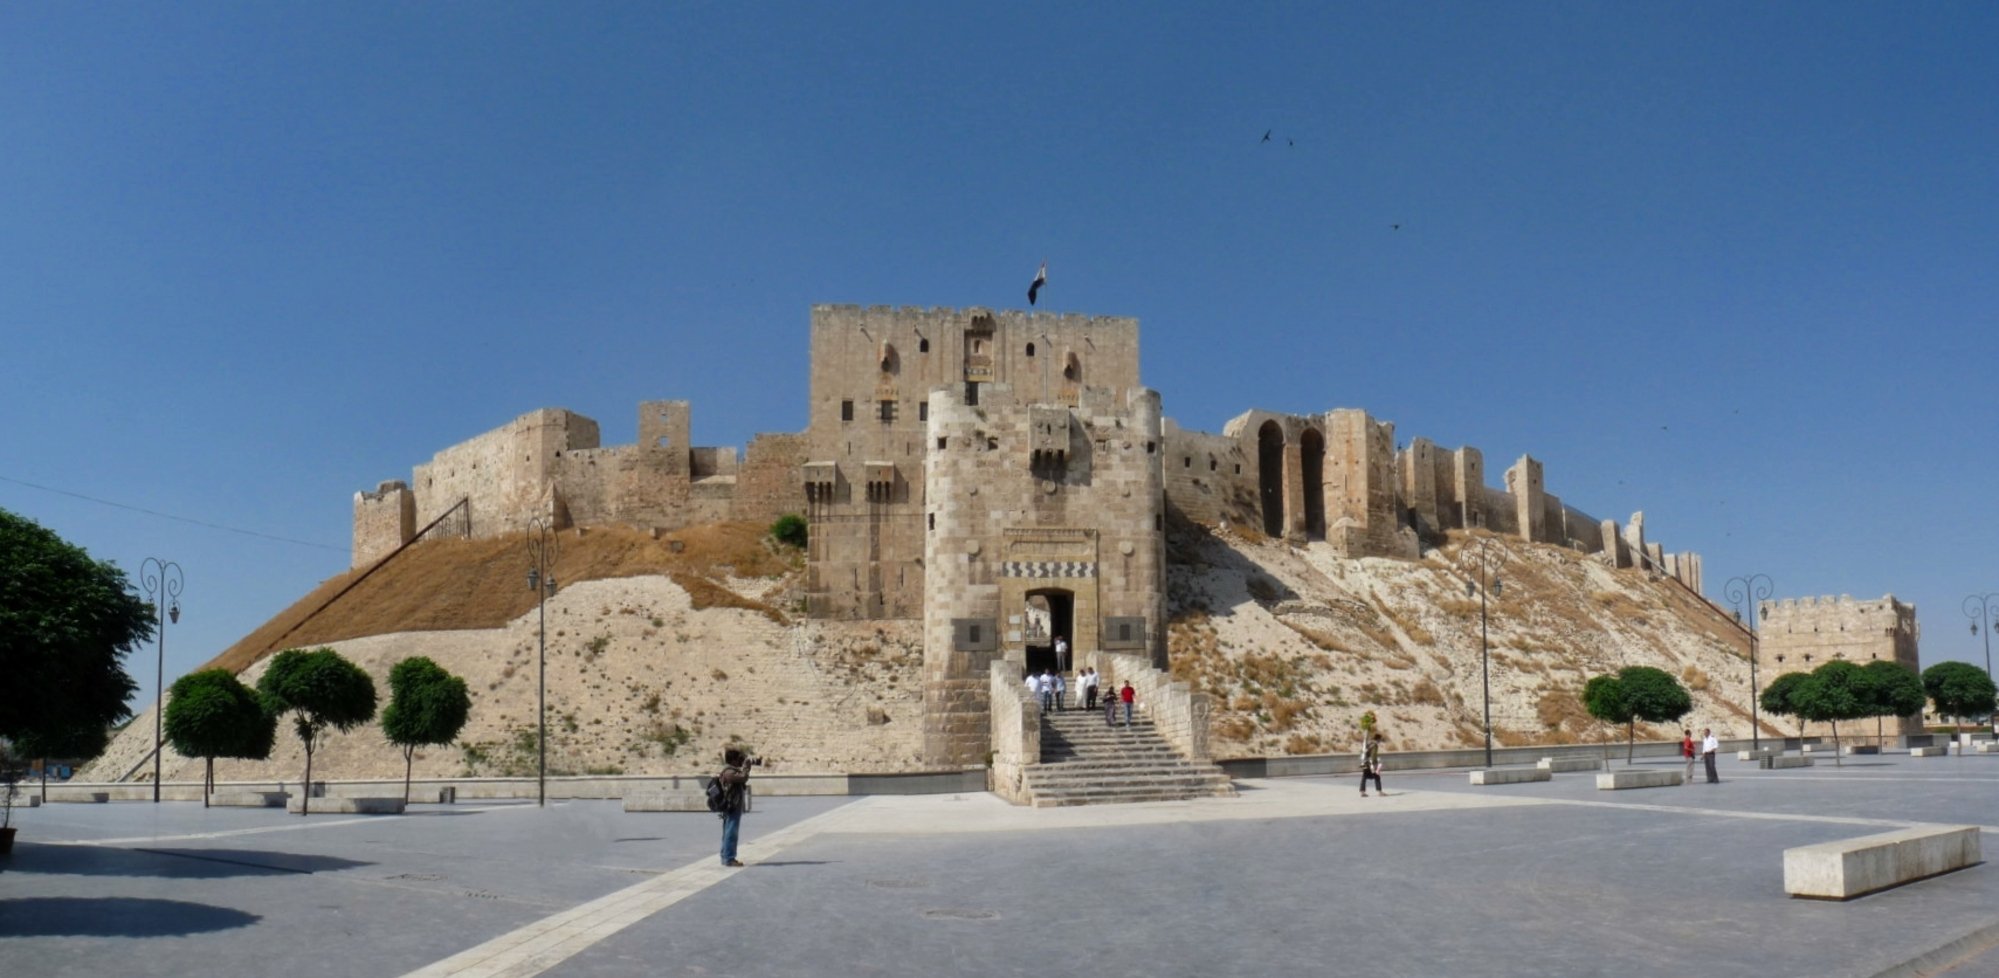 El terremoto en Siria provoca daños en la ciudadela de Alepo, patrimonio de la humanidad por la Unesco